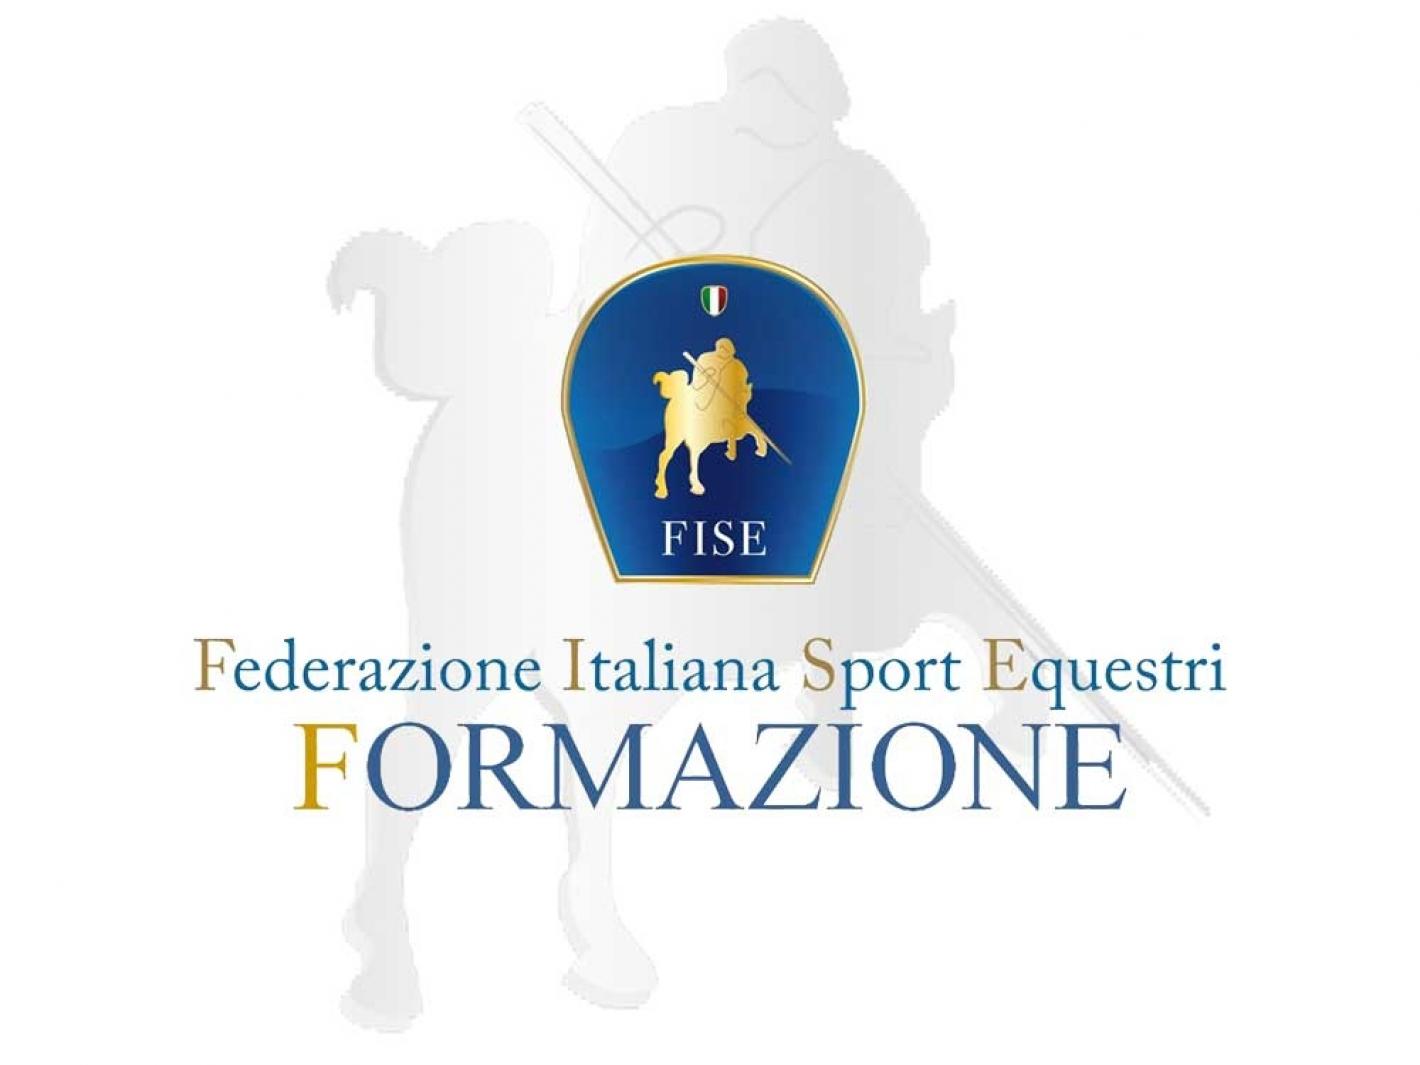 images/piemonte/Piemonte/Formazione/medium/FORMAZIONE_2020.jpg